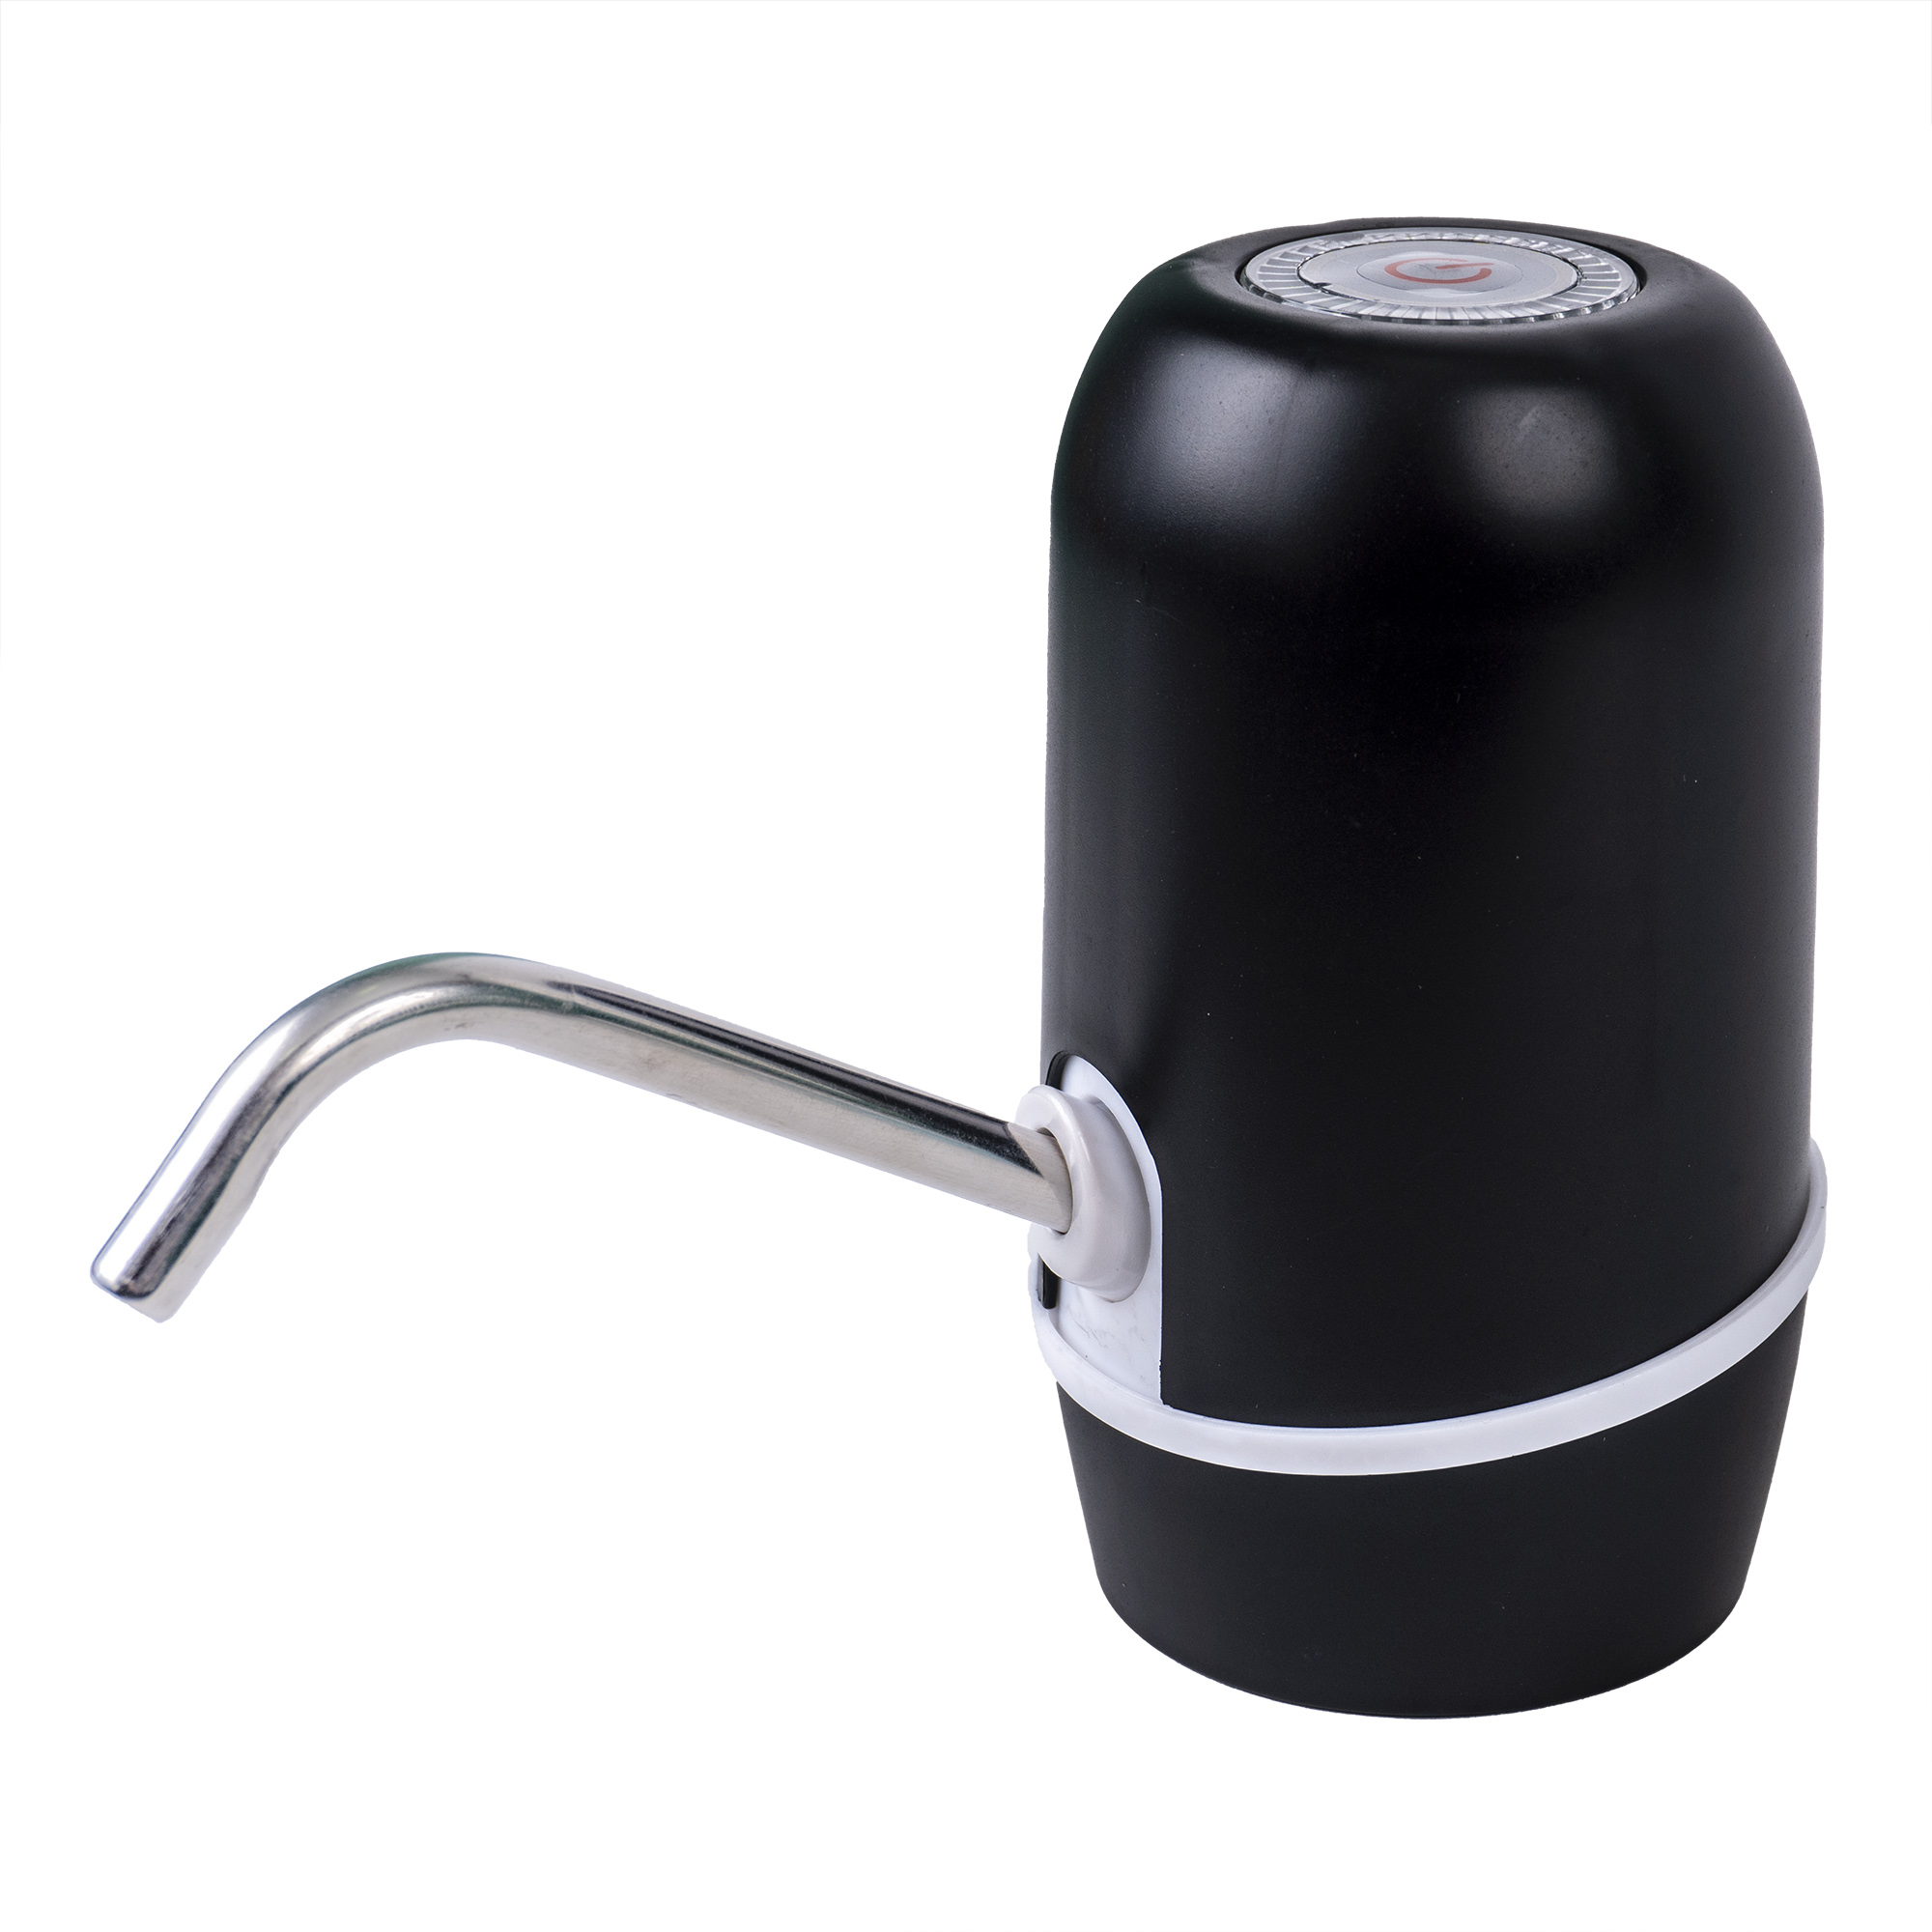 Pompa electrica pentru dozarea apei din bidoane, uz casnic, cu incarcare USB / DSY 1053